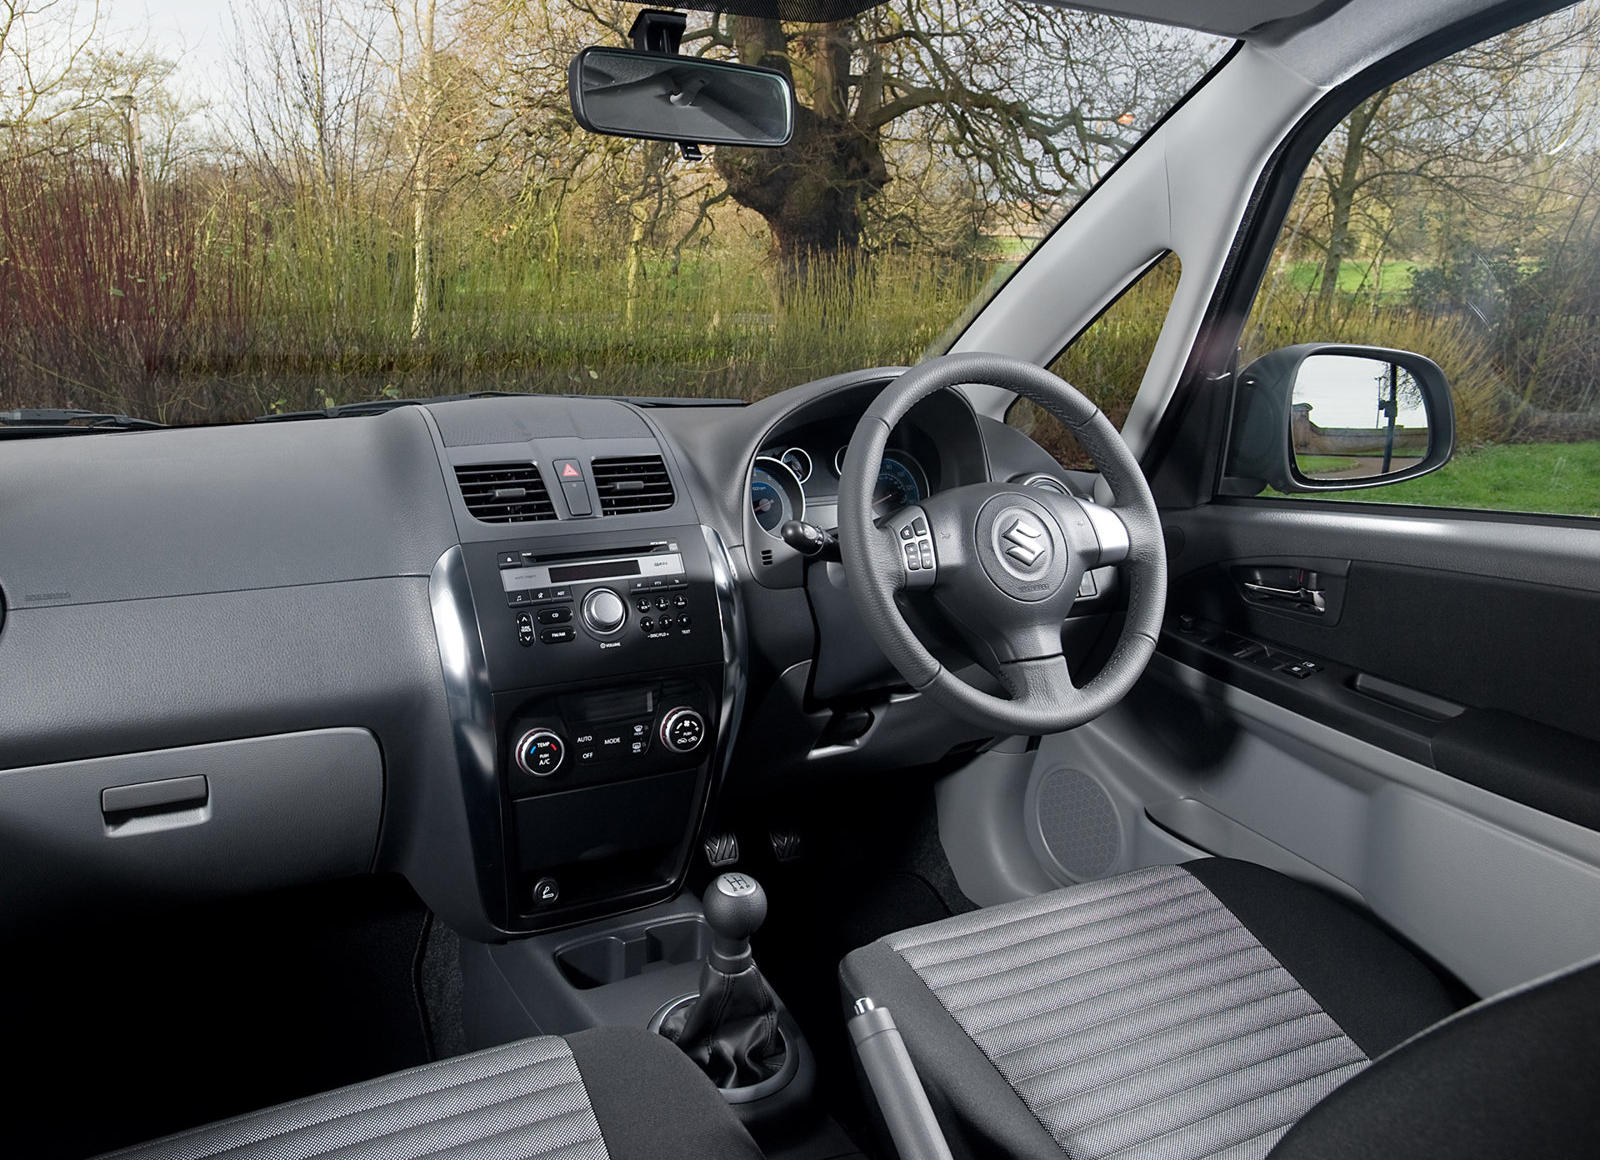 2011 Suzuki SX4 Hatchback Interior Photos | CarBuzz